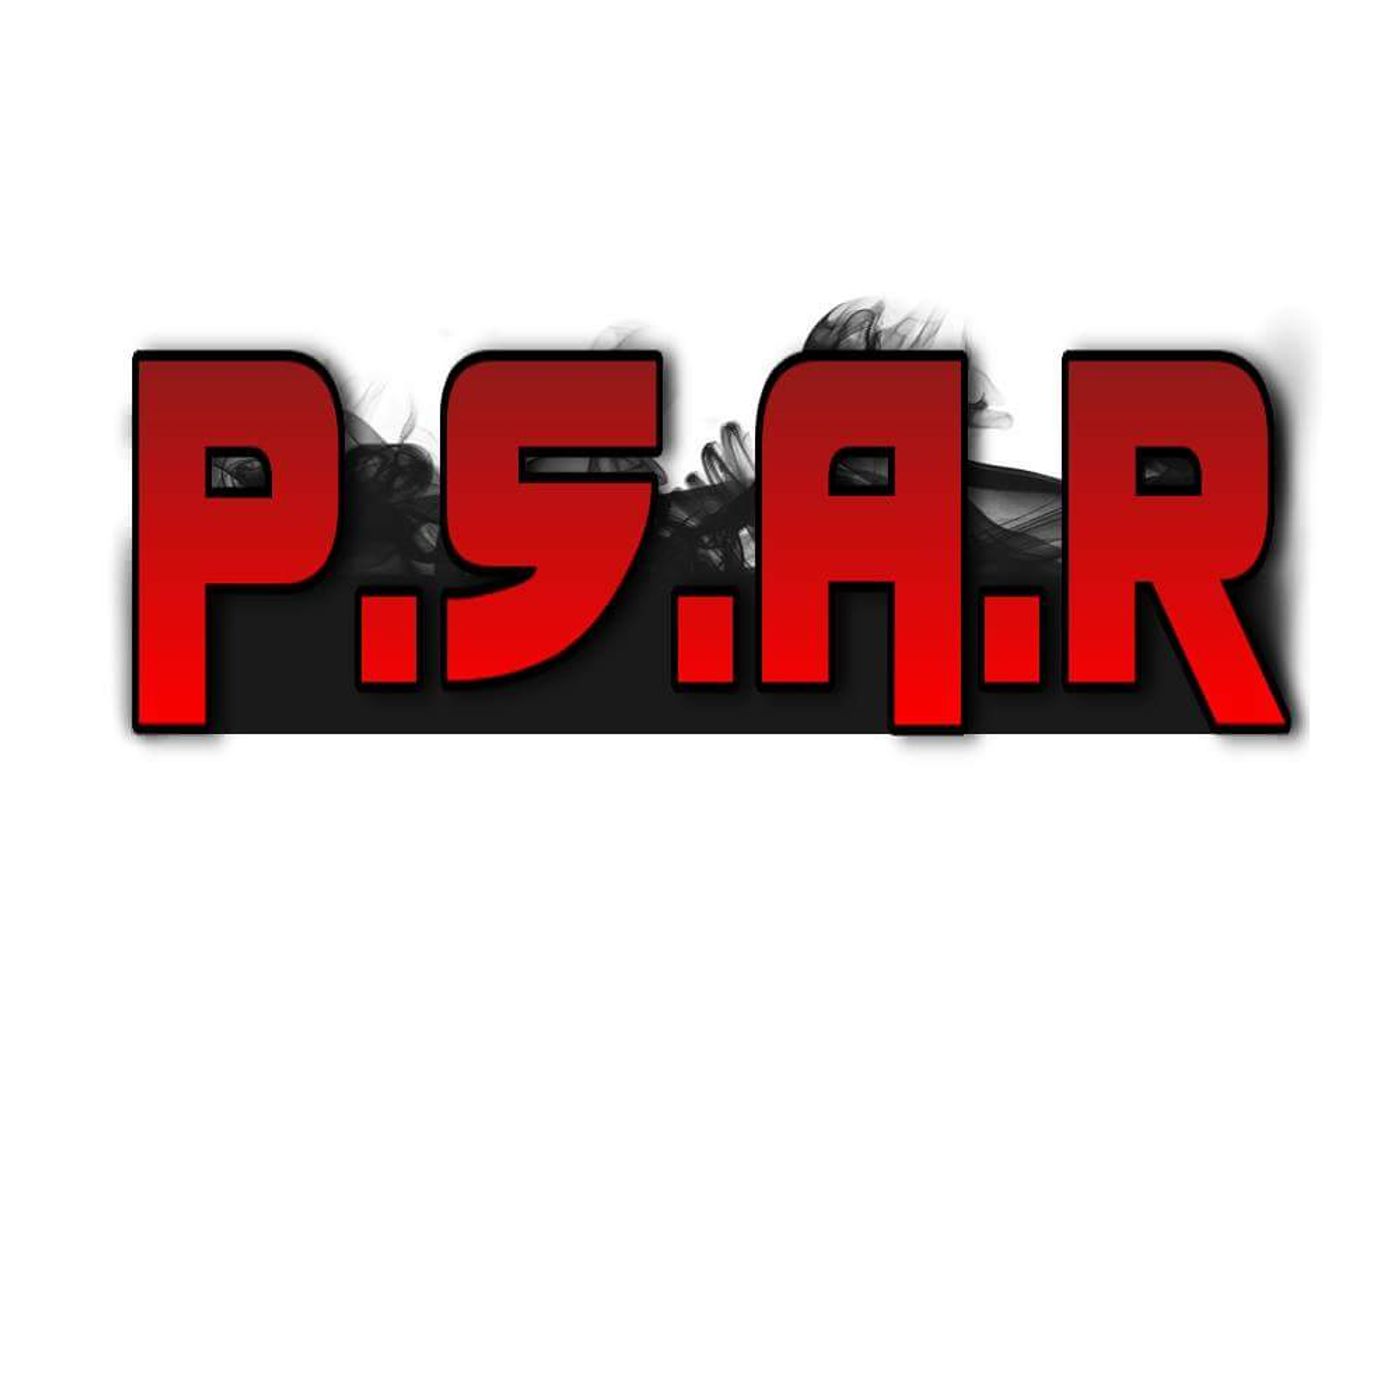 P.S.A.R's show